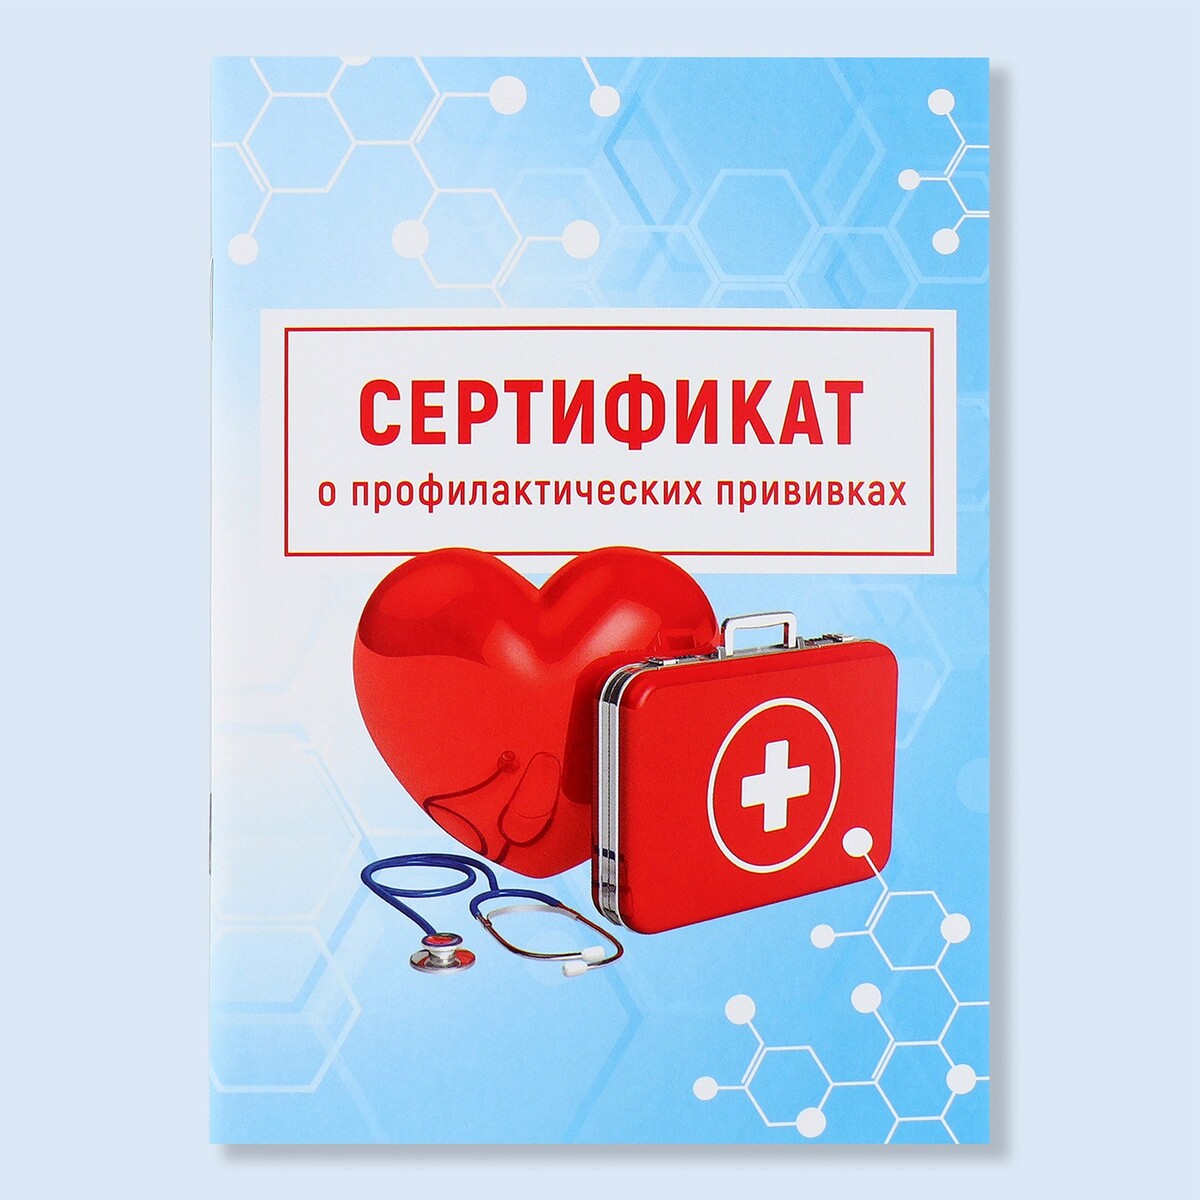 Сертификат о профилактических прививках а6, медицина, 24 страницы энергоинформационная медицина